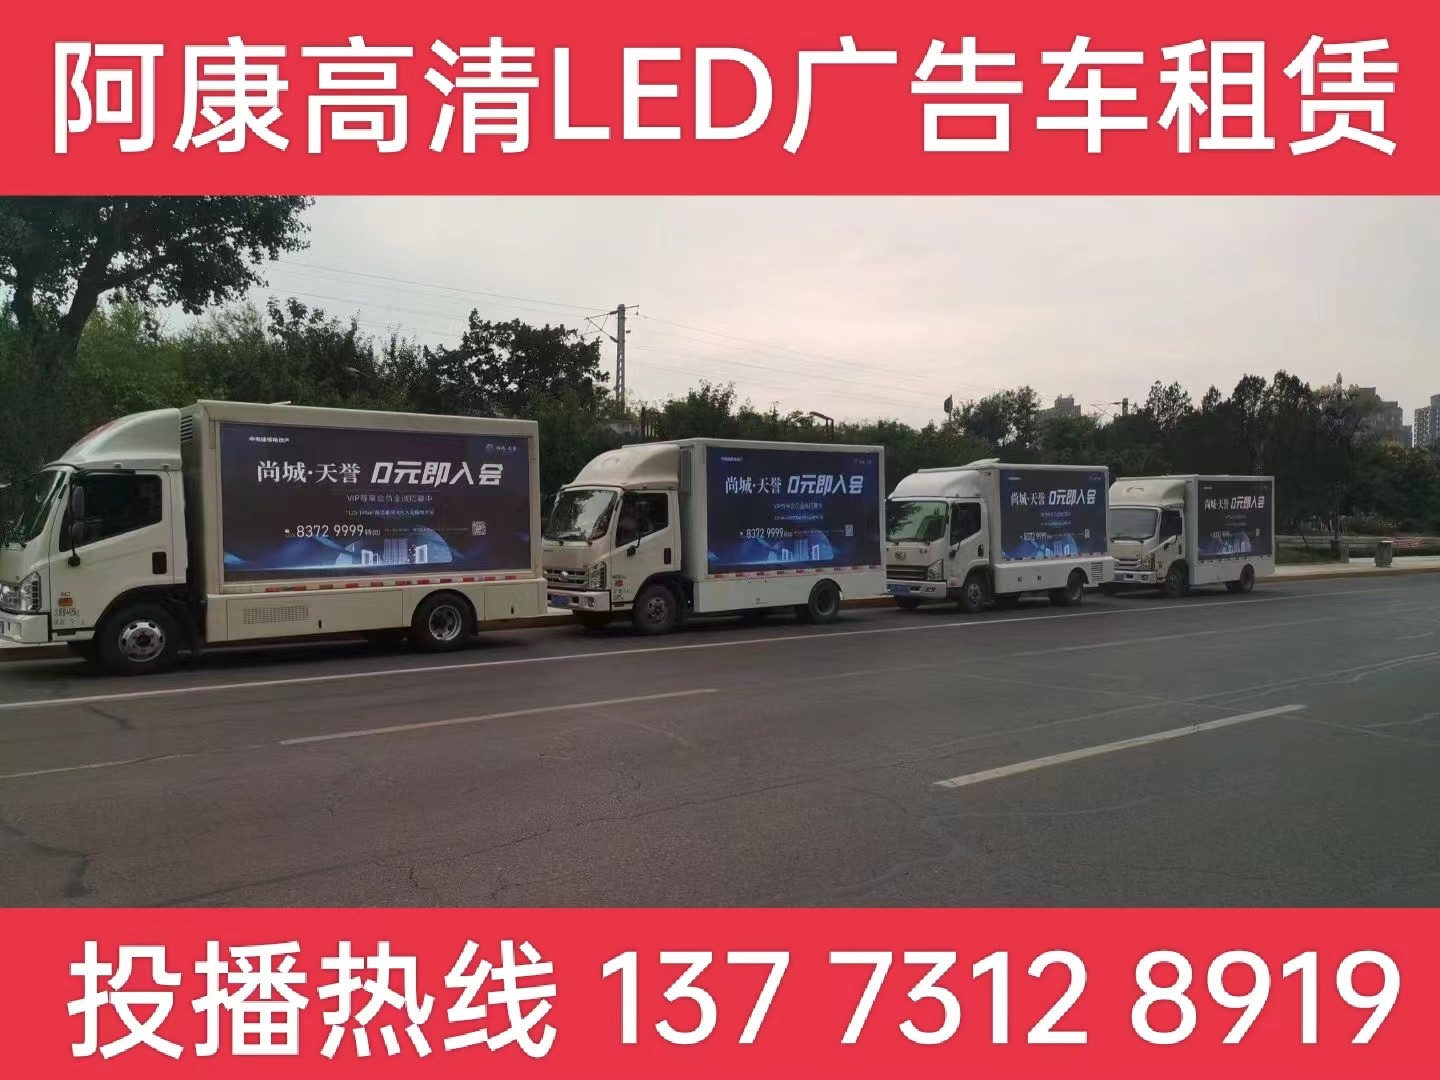 溧阳LED广告车出租公司